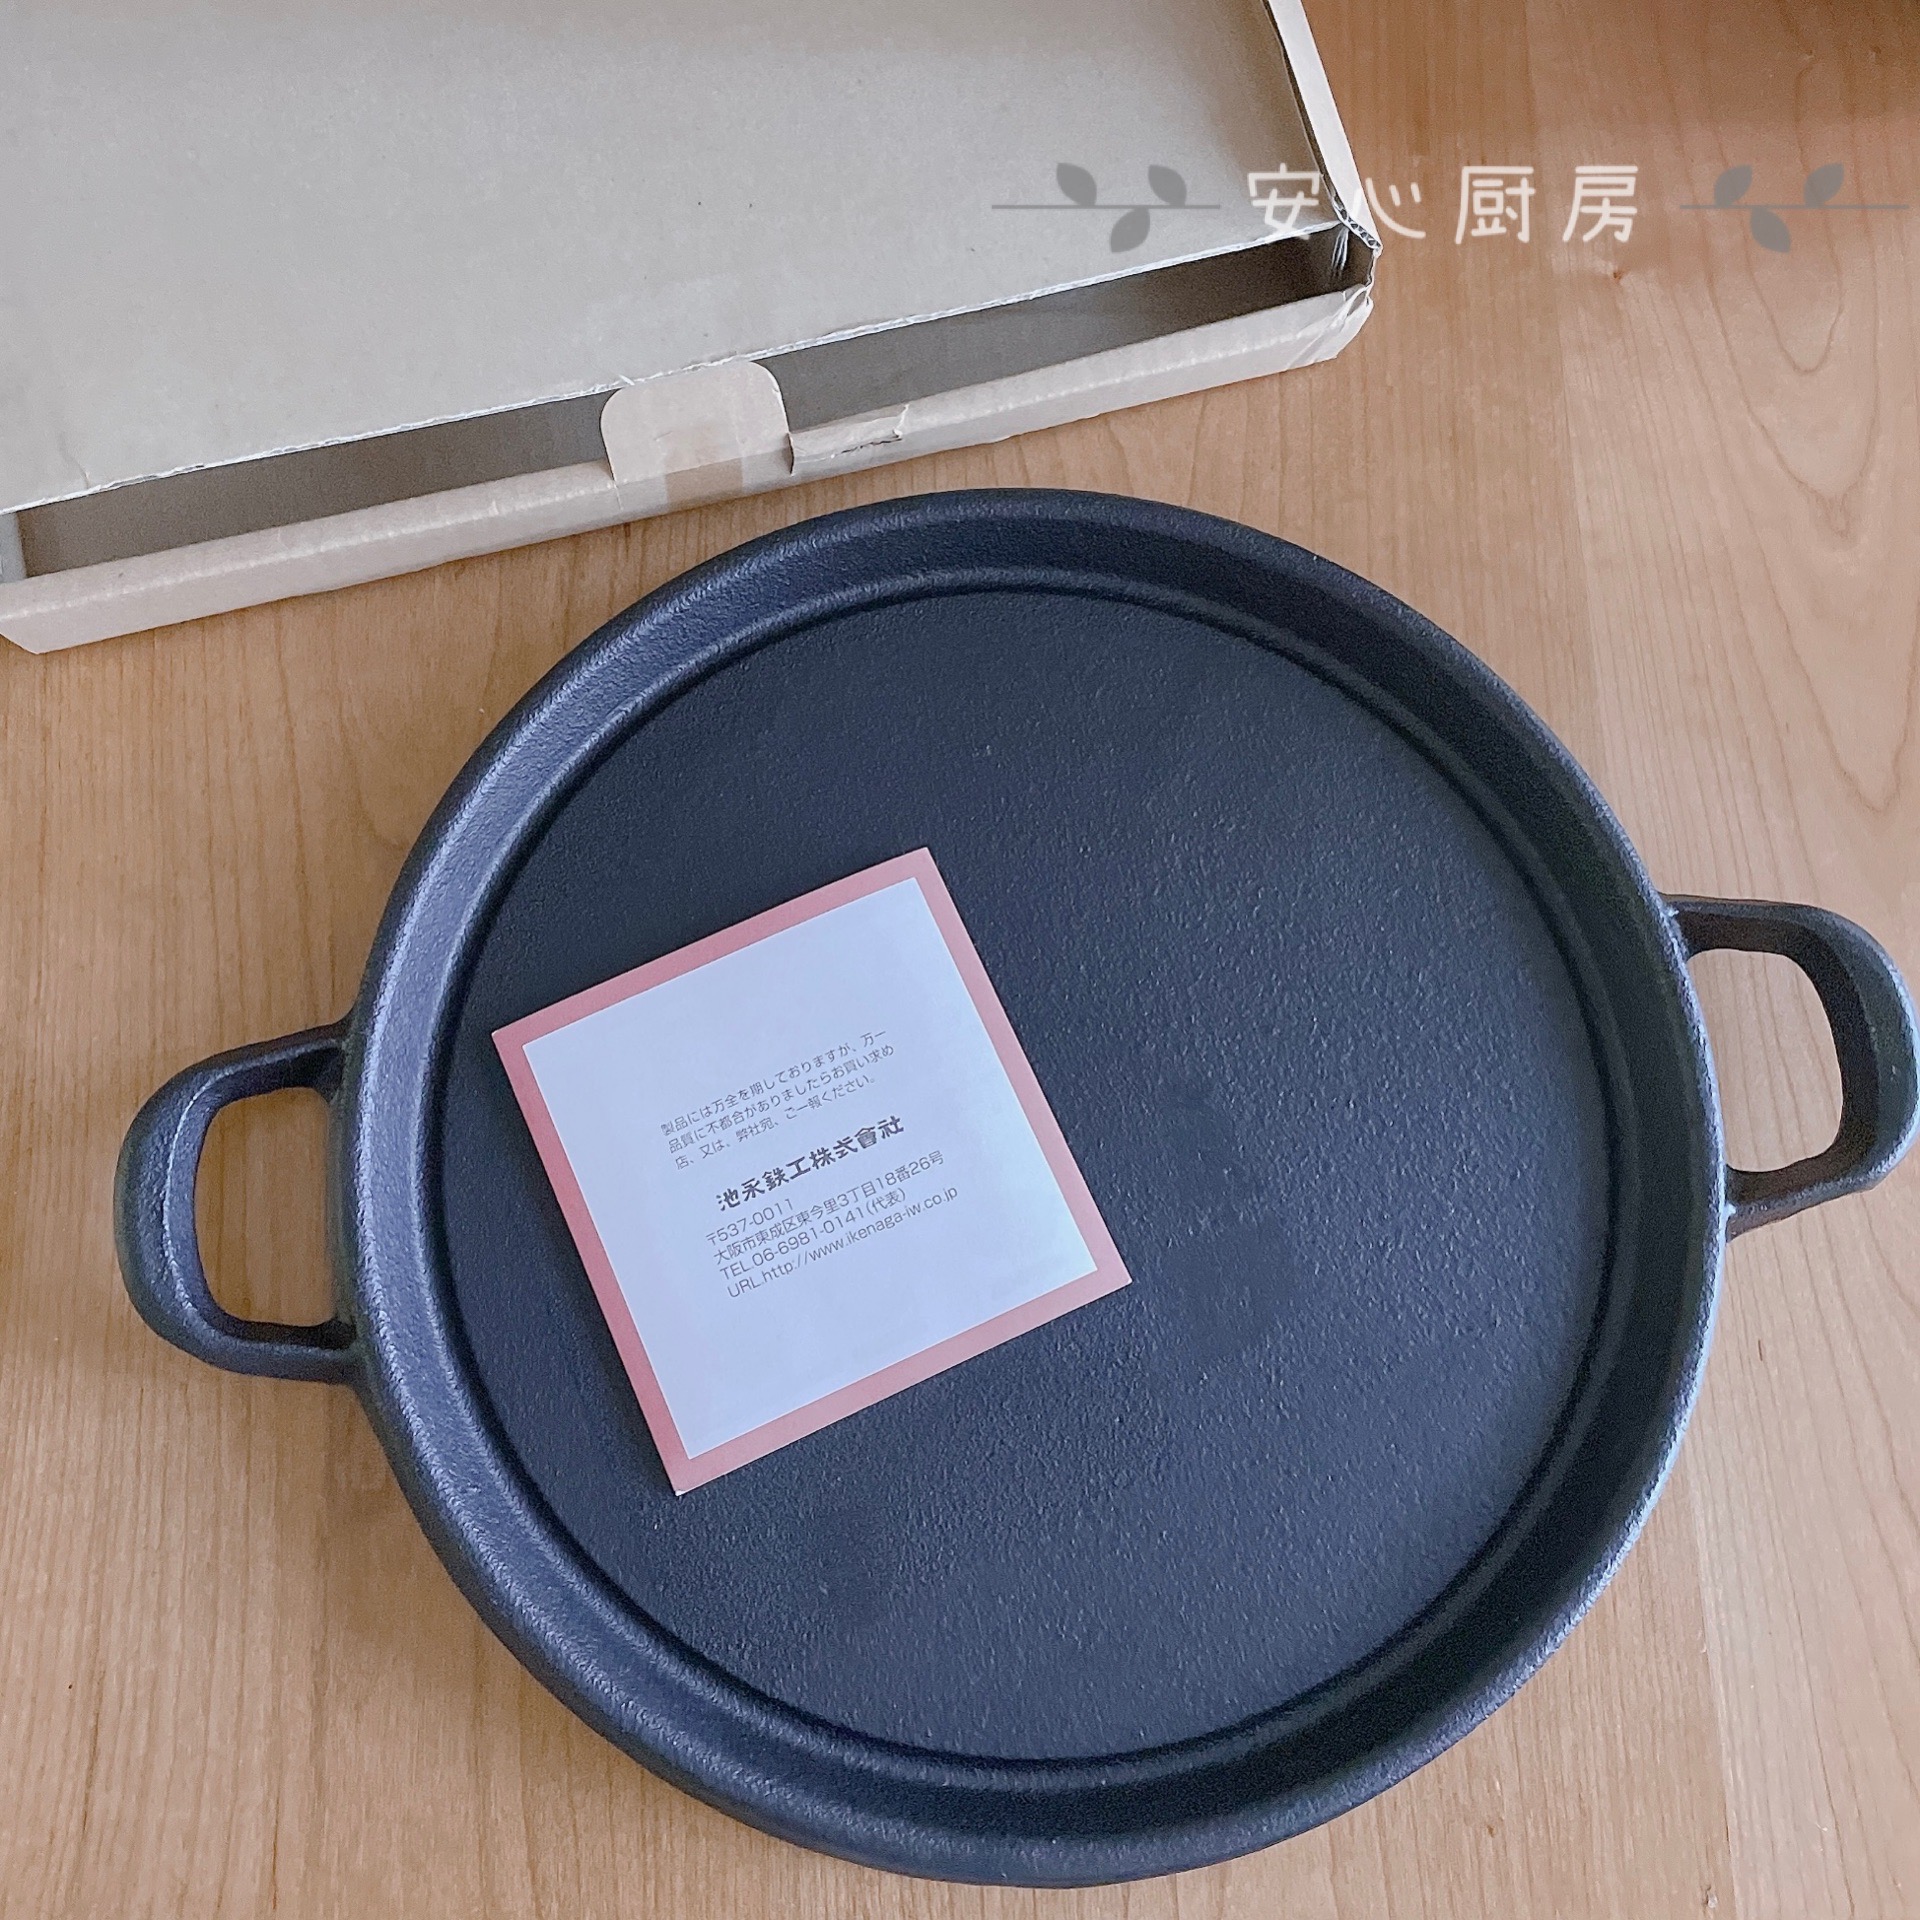 日本制池永南部铁器烧烤烤盘烤肉铁板烧牛排铸铁锅 平底煎锅煎饼